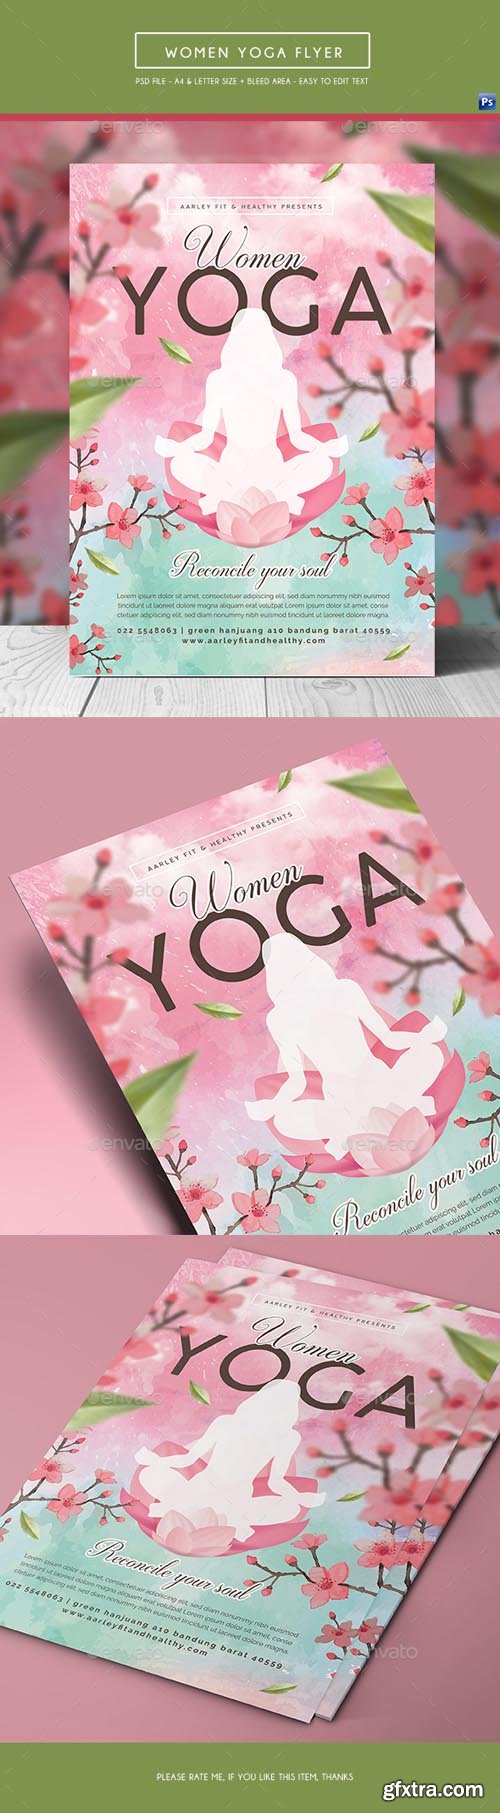 GR - Women Yoga Flyer / Poster 20833438